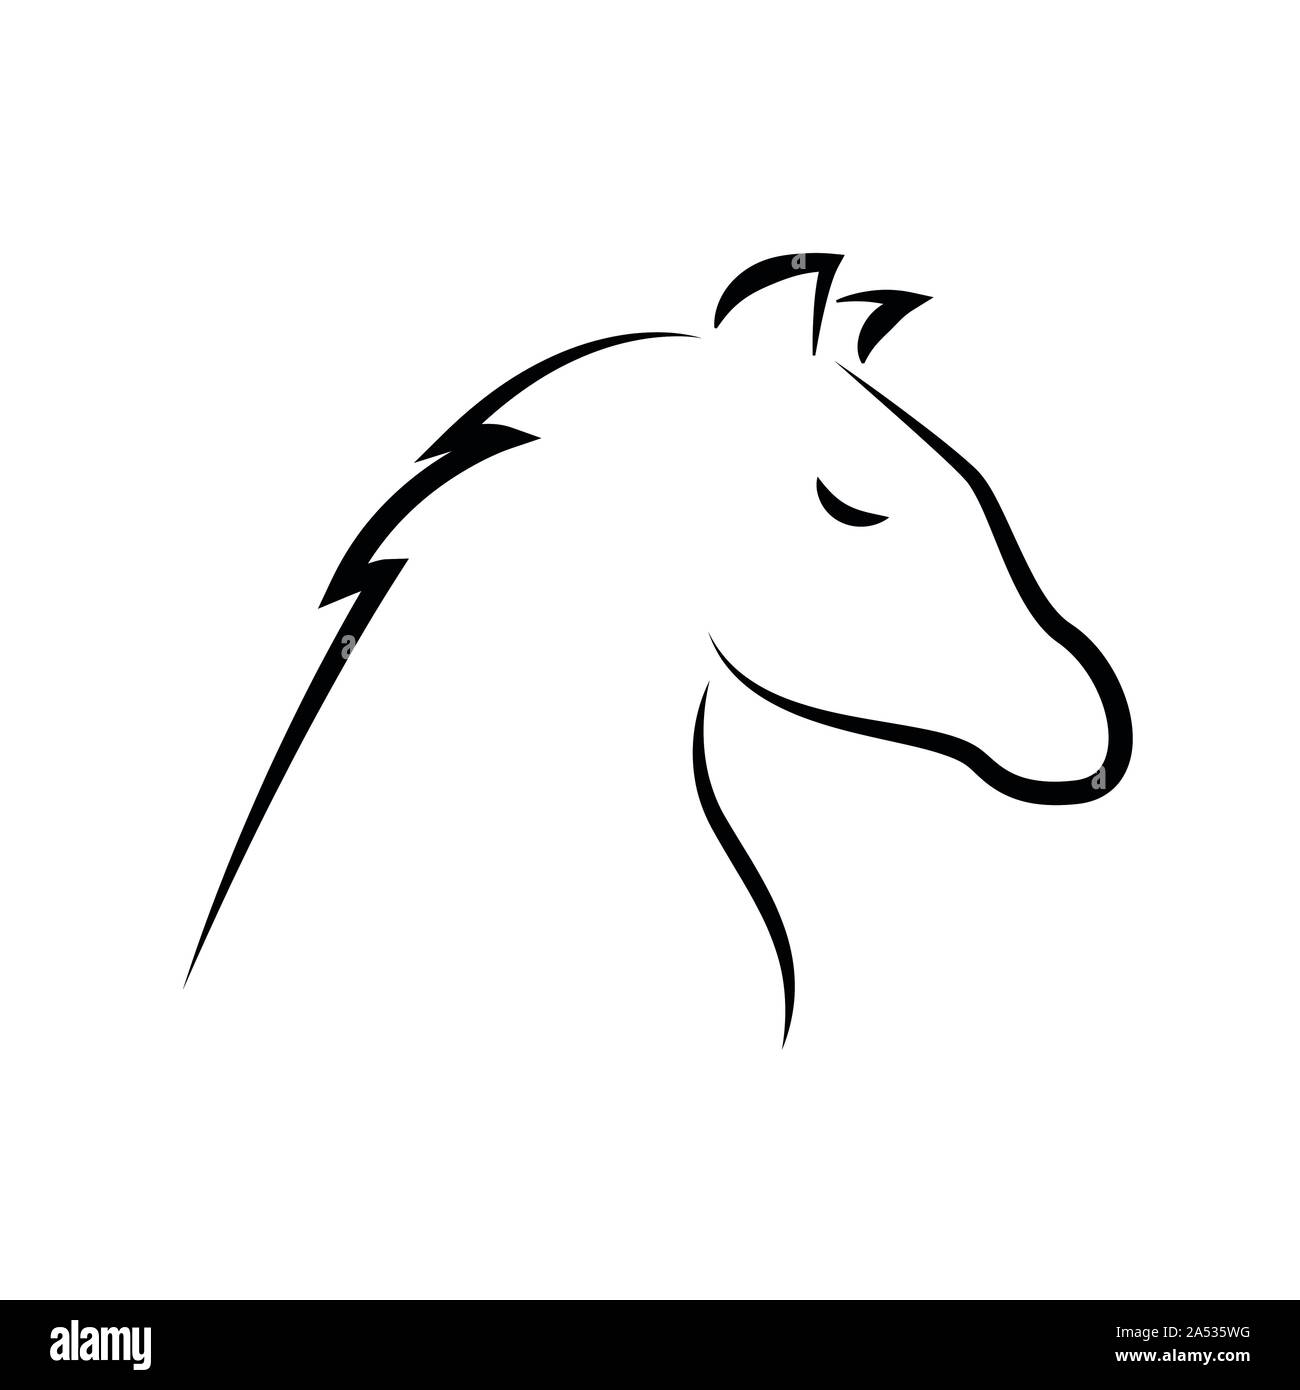 Schéma d'encombrement du cheval isolé sur fond blanc vector illustration EPS10 Illustration de Vecteur